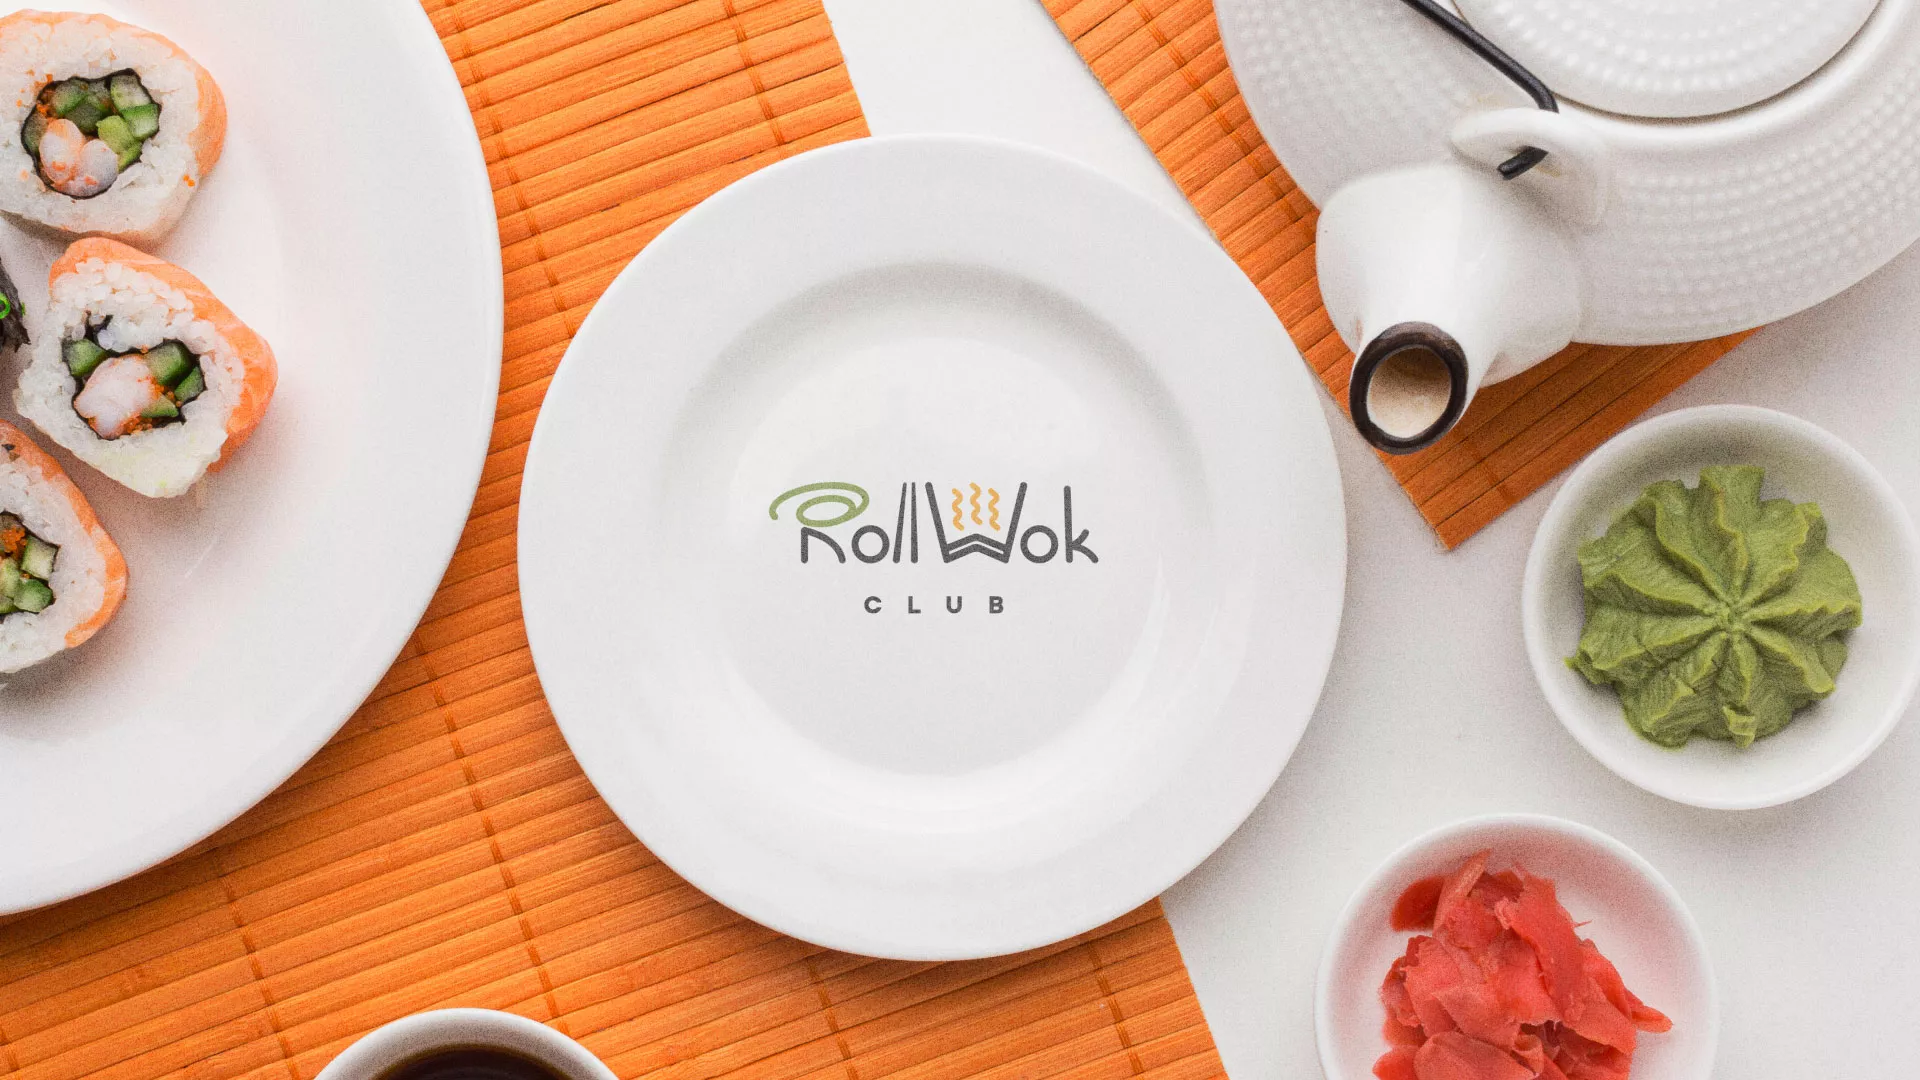 Разработка логотипа и фирменного стиля суши-бара «Roll Wok Club» в Чкаловском